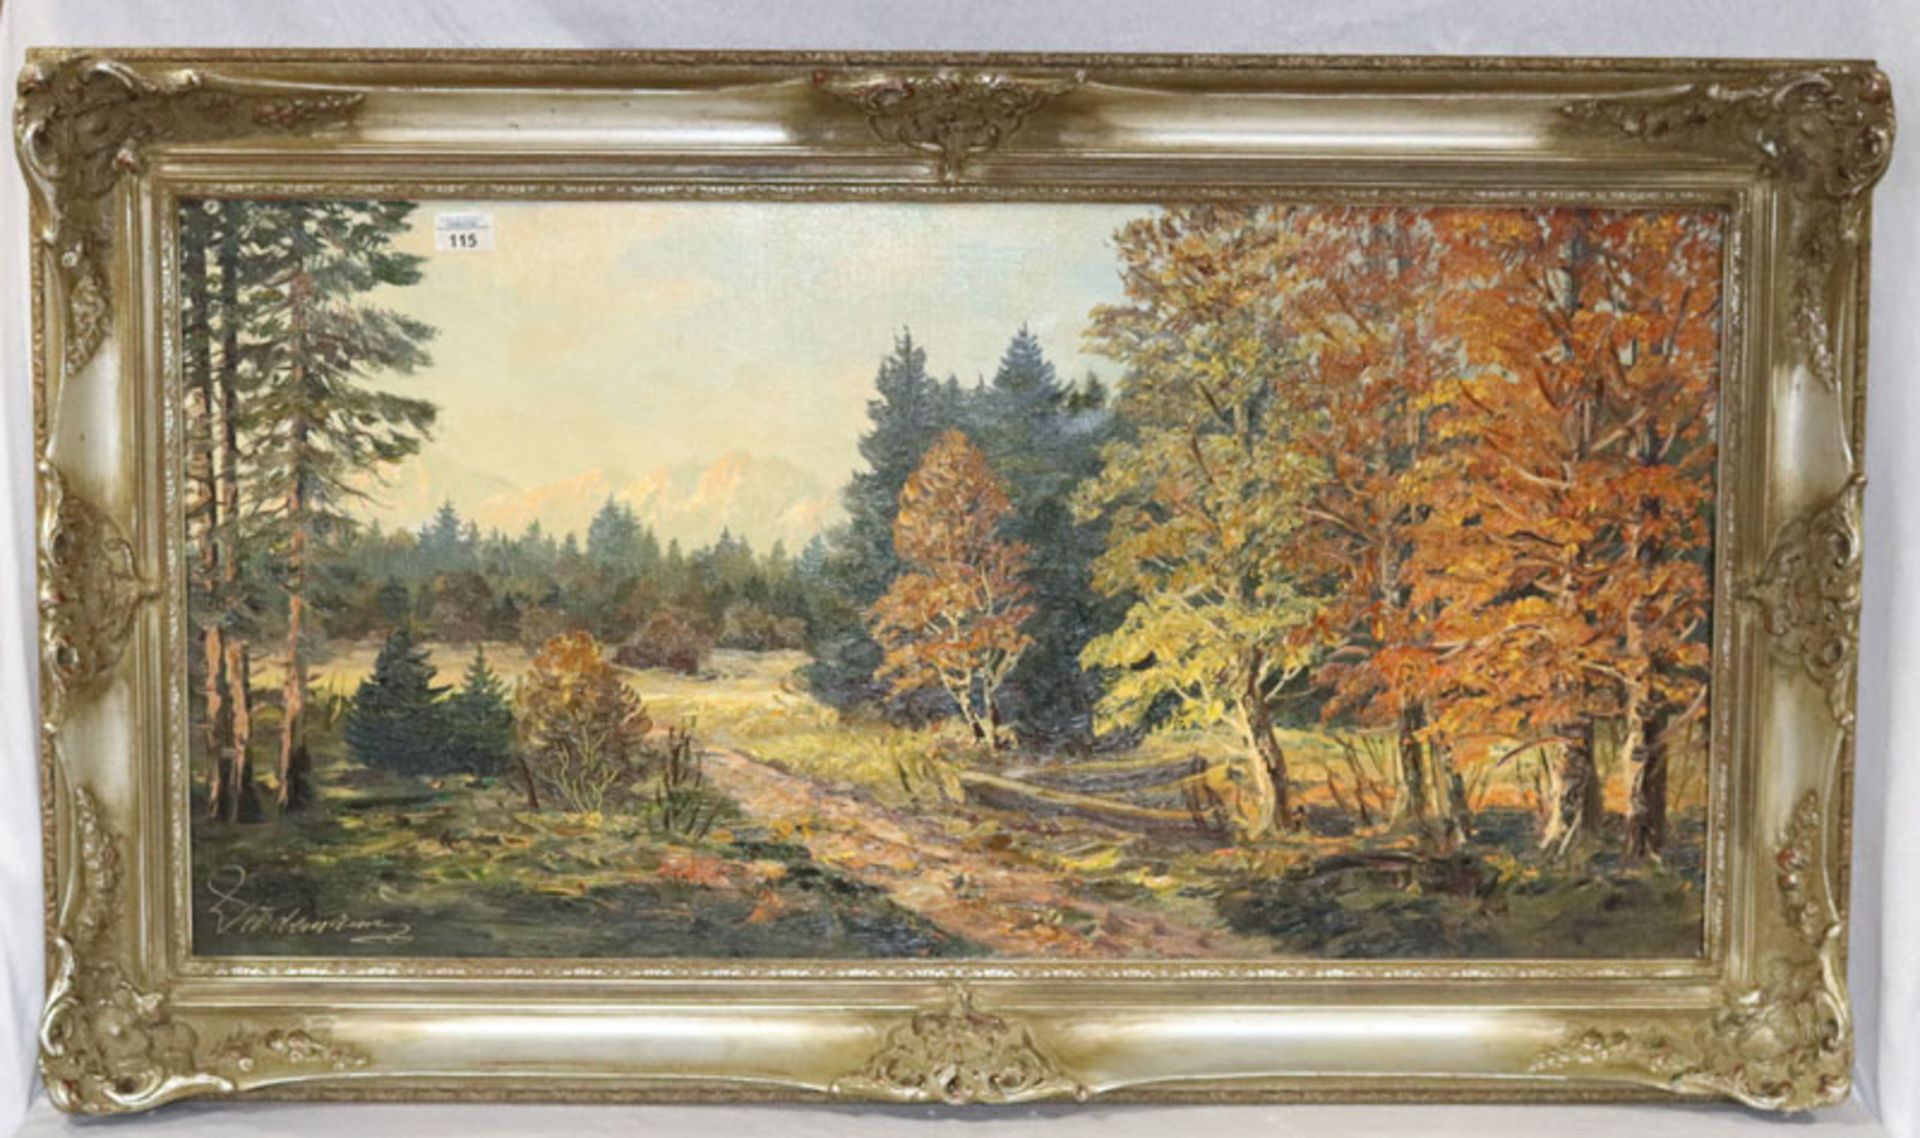 Gemälde ÖL/LW 'Herbstliche Landschafts-Szenerie', signiert Wiedemann, Ludwig, * 1934 München + 2008